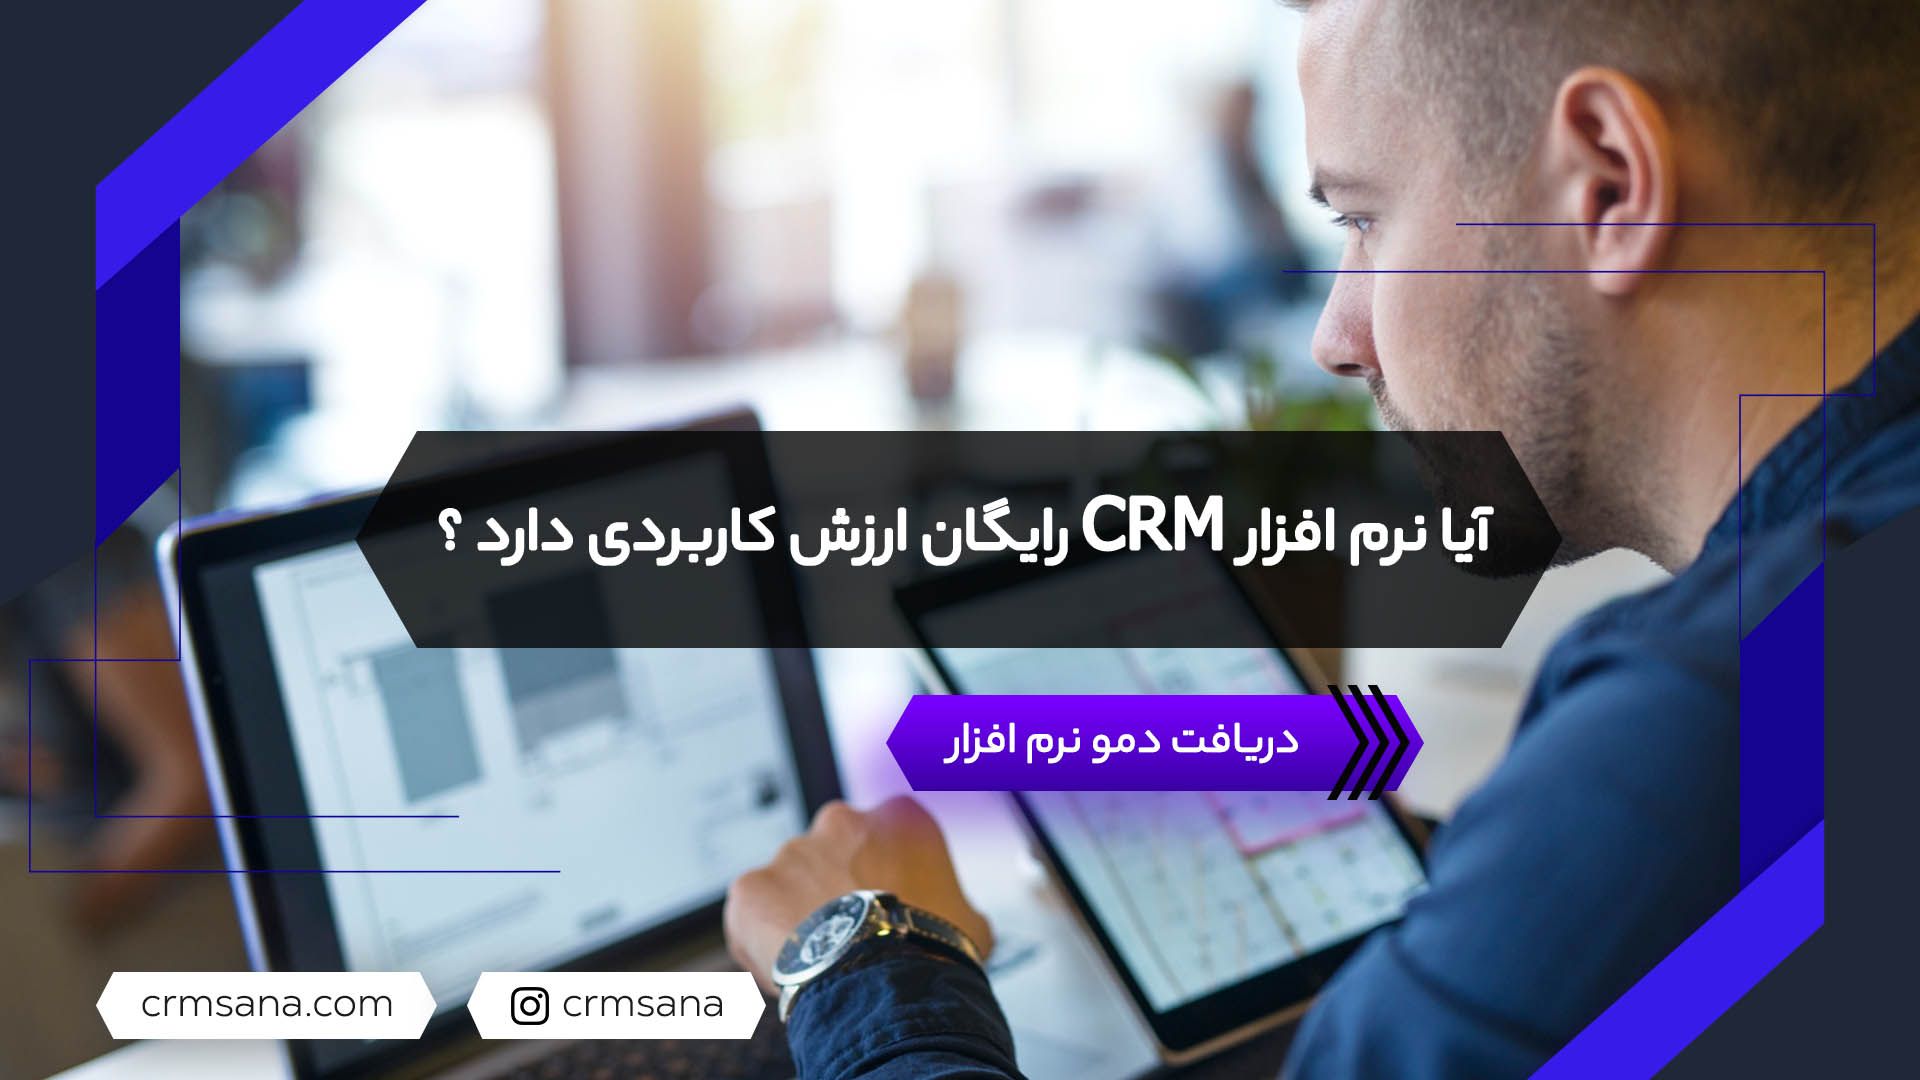 نرم افزار CRM رایگان چیست؟